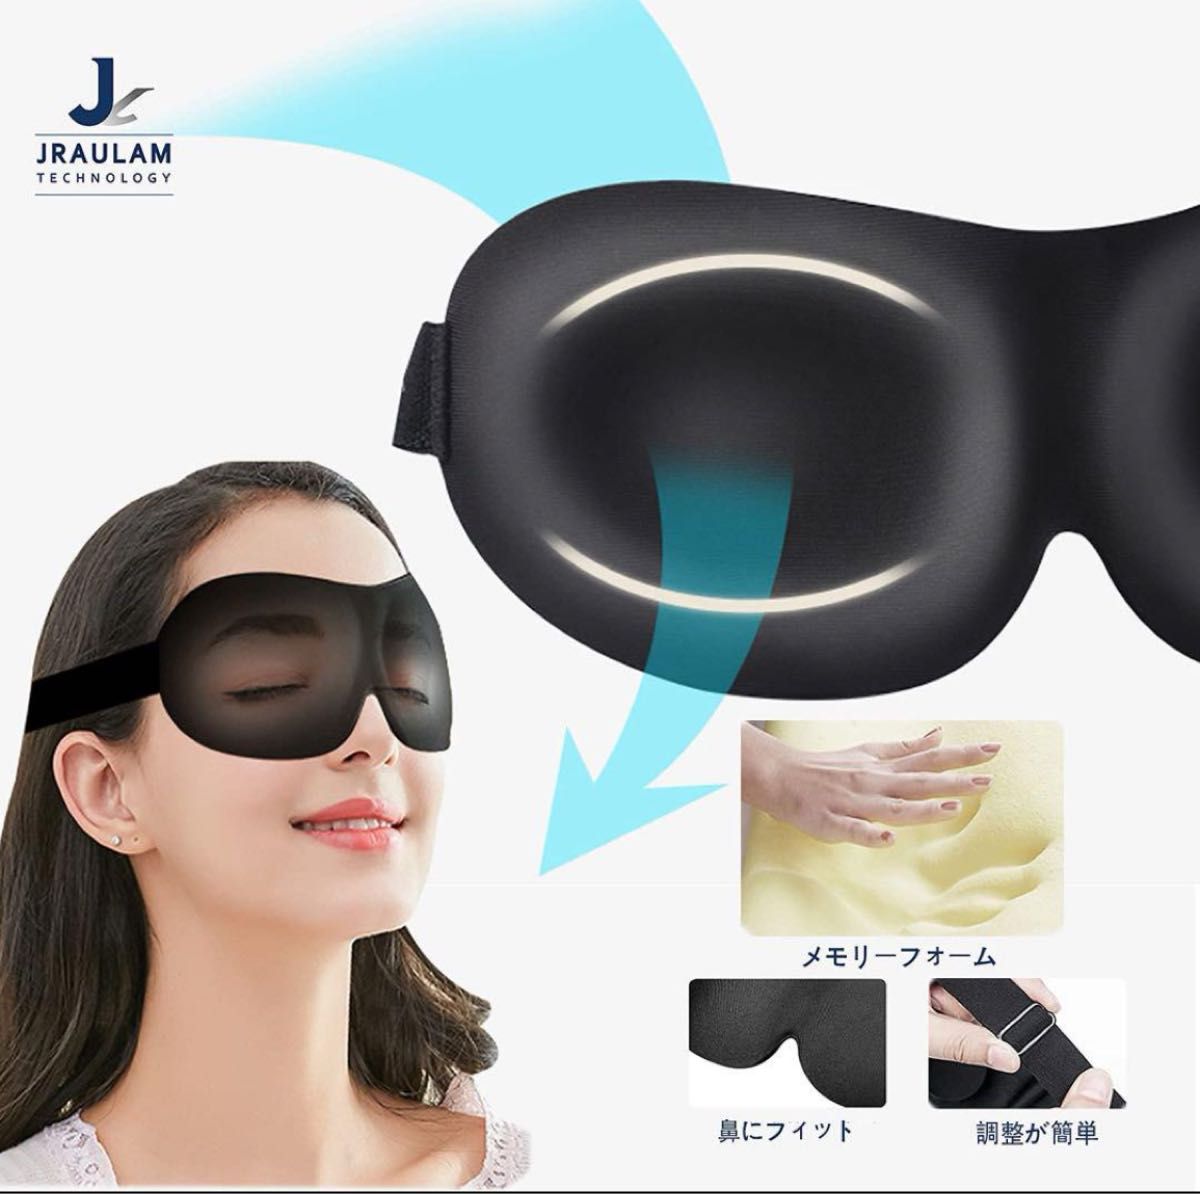 アイマスク 立体型 軽量 遮光 安眠マスク 柔らかい 圧迫感なし グレー 睡眠 仮眠 遮光 瞑想 旅行用3D